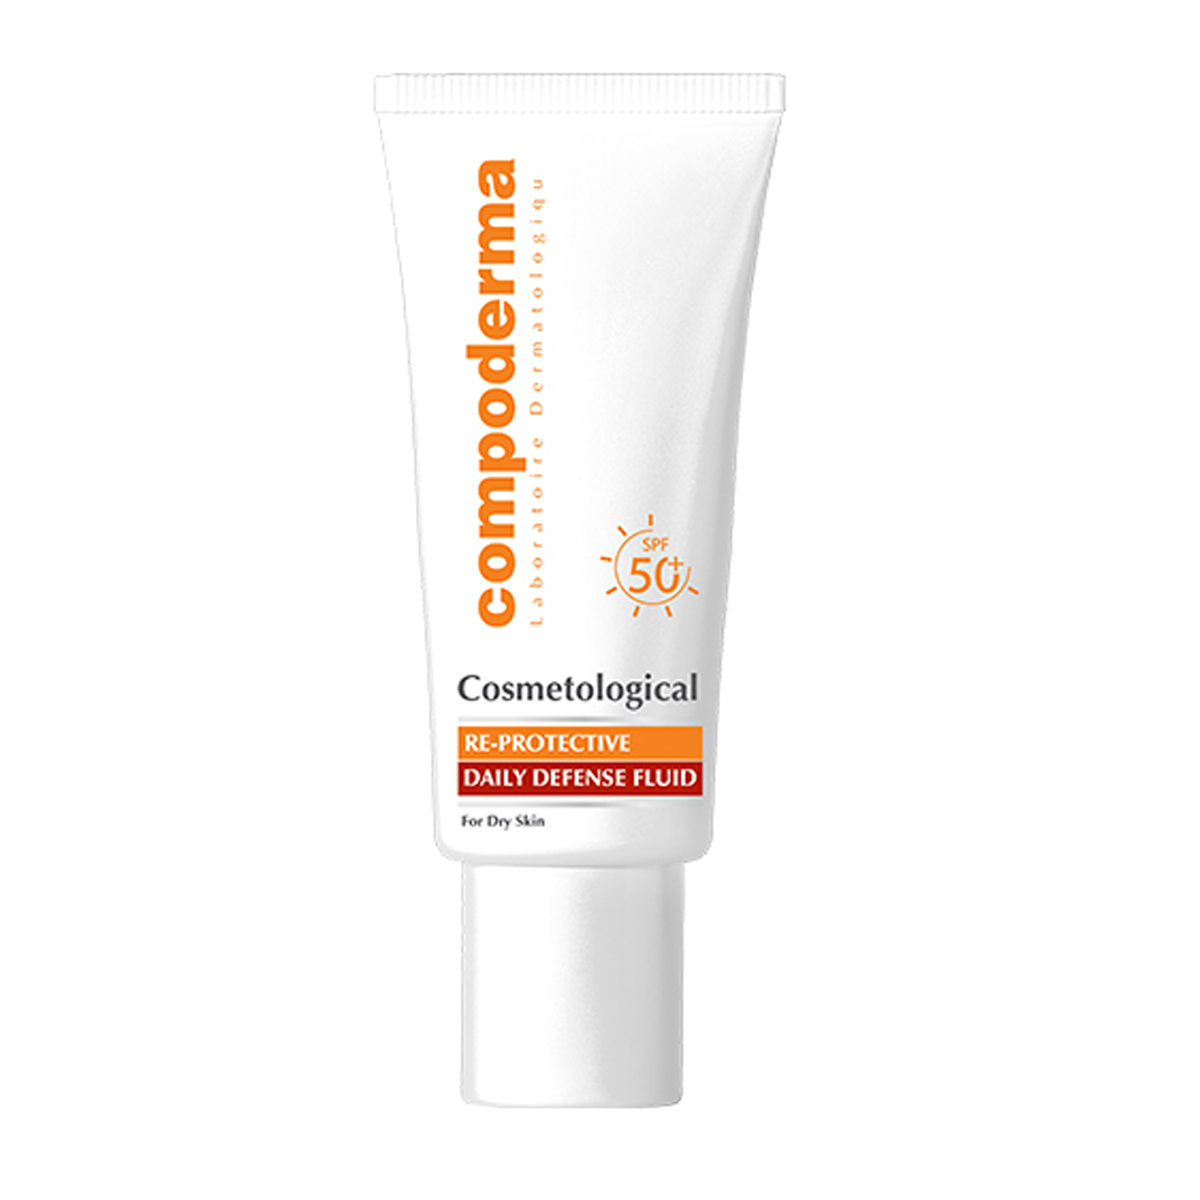 ضد آفتاب ری پروتکتیو SPF50+ مناسب پوست خشک و خیلی خشک~Re Protective Daily Defense Fluid SPF50+ For Dry Skin~COMPODERMA